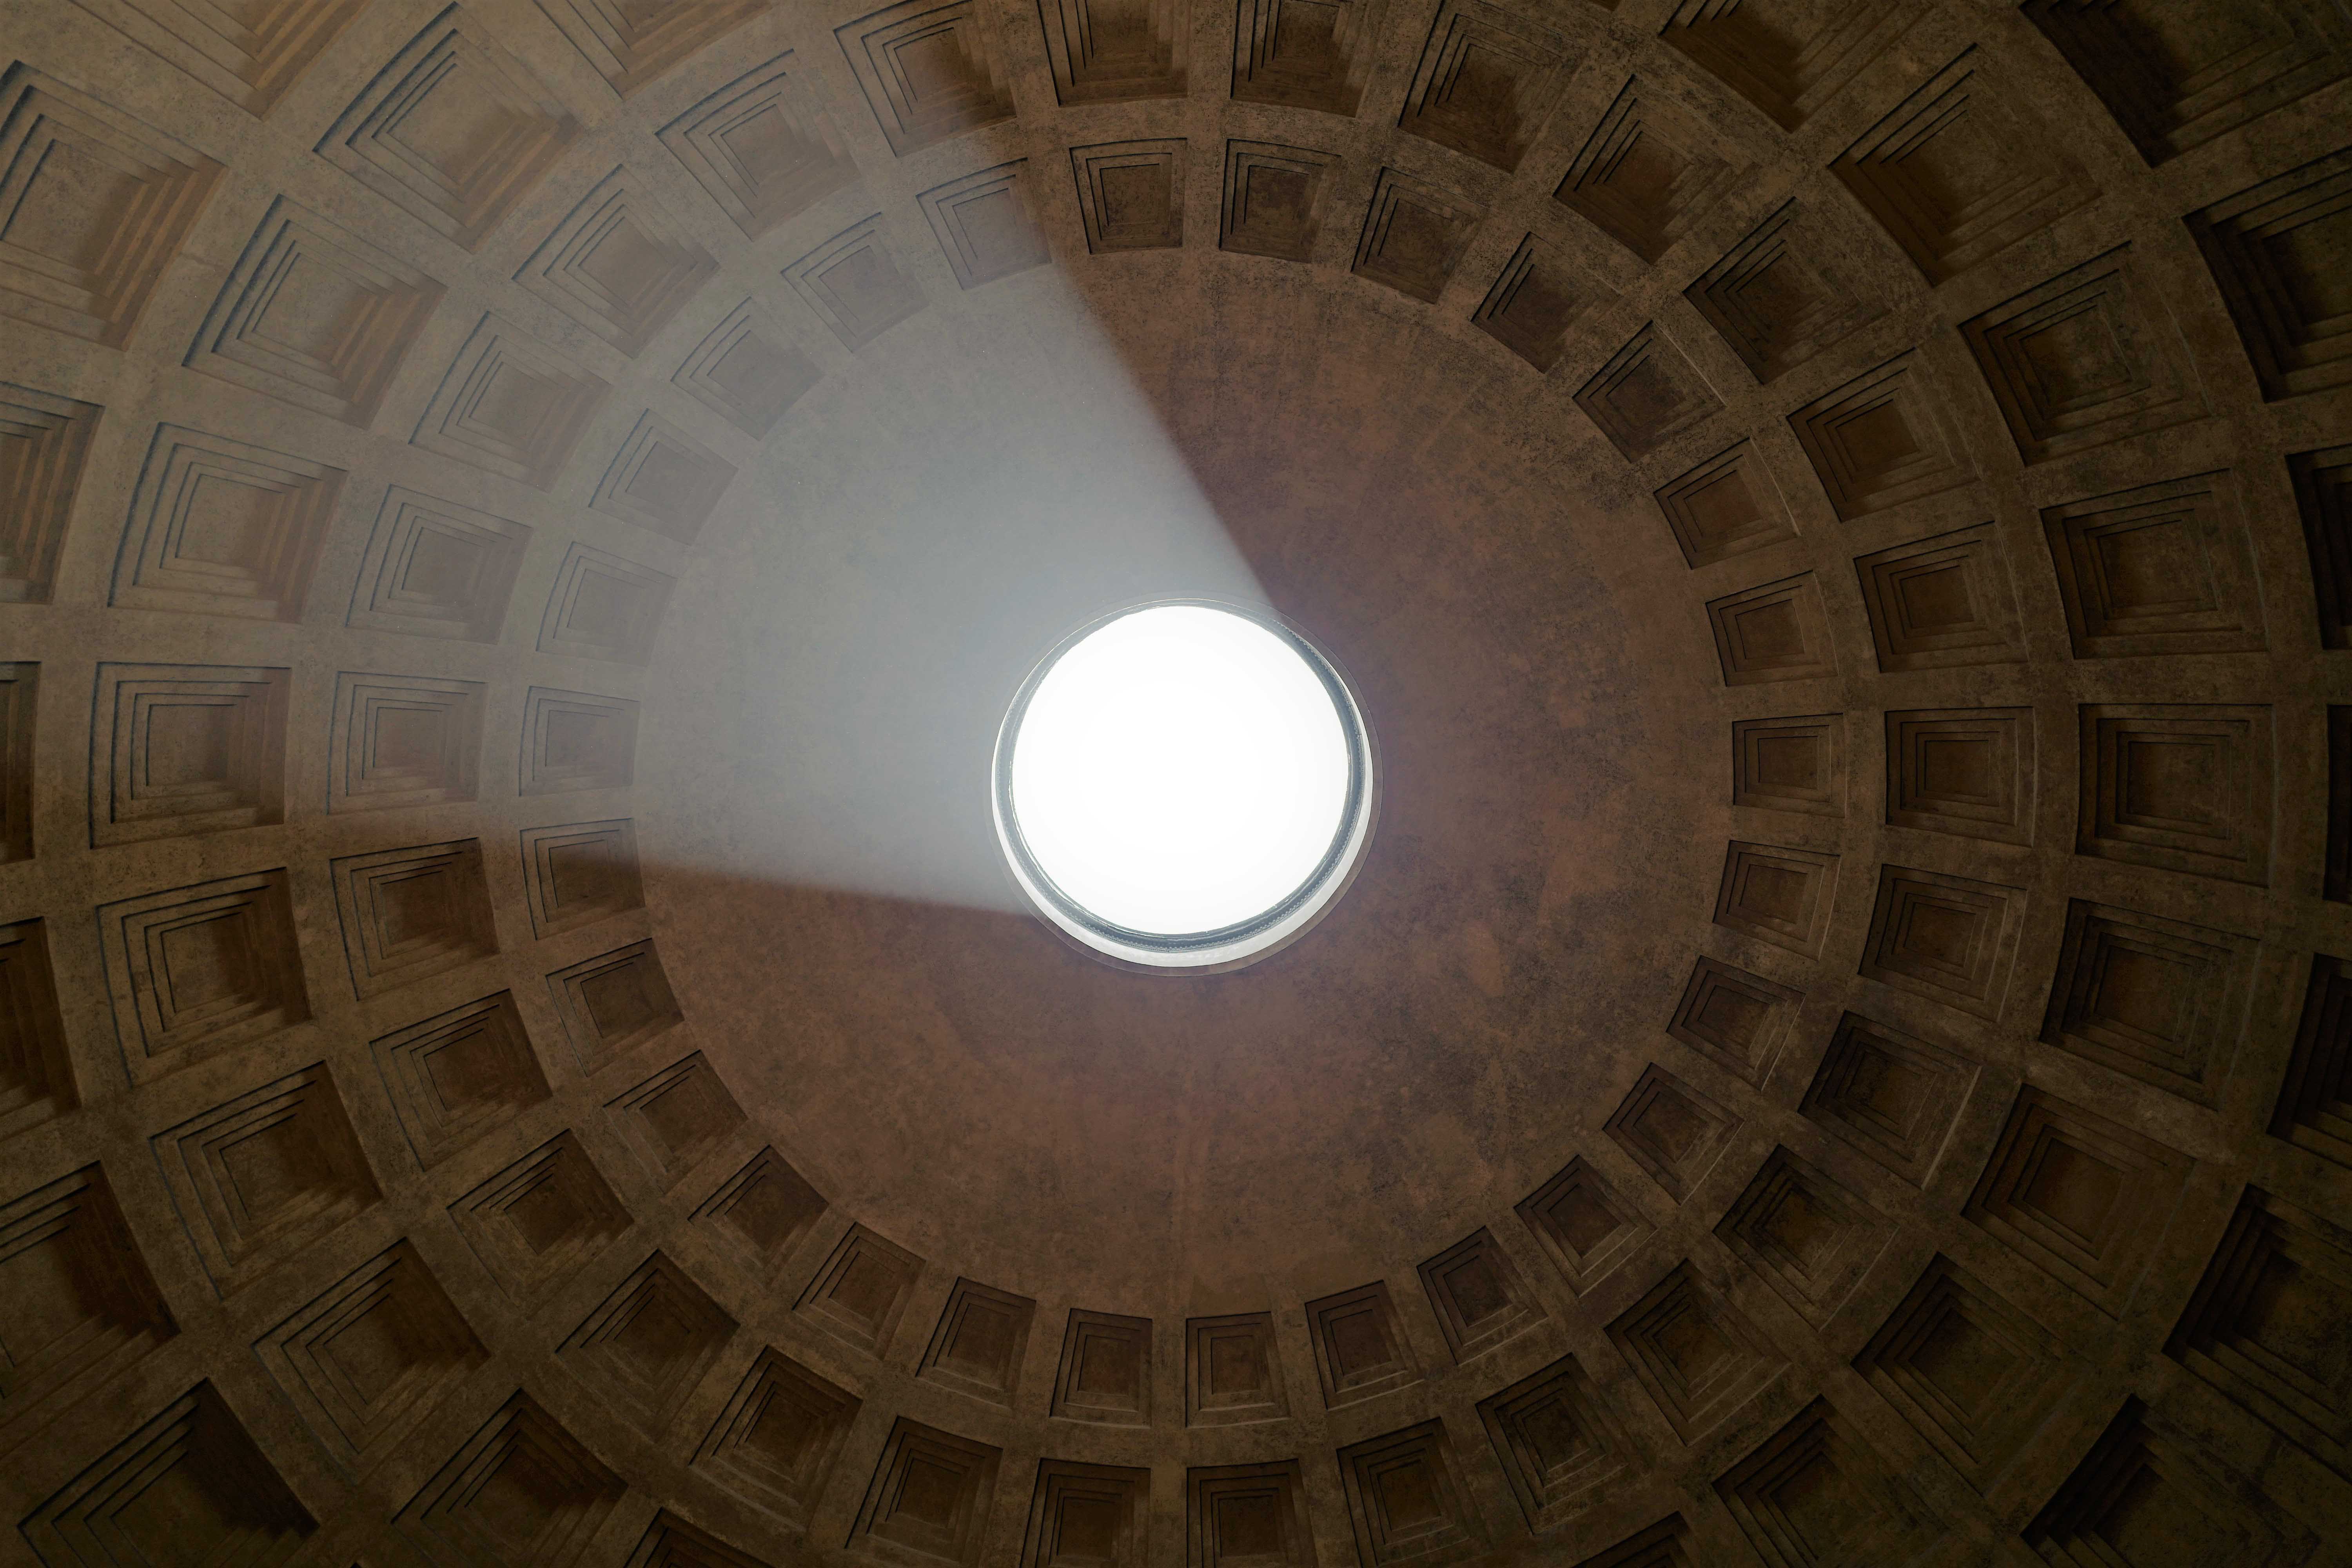 Das Bild zeigt eine Aufnahme von innen einer großen, runden Kuppel. Die Kuppel hat ein zentrales Opaion oder Loch an der Spitze, durch das Tageslicht einfällt und den Innenraum beleuchtet. Ein Strahl des einfallenden Lichts ist sichtbar und beleuchtet einen Teil der inneren Oberfläche der Kuppel. Die innere Oberfläche der Kuppel ist mit regelmäßig angeordneten, rechteckigen Vertiefungen verziert. Die Farbpalette des Bildes besteht hauptsächlich aus warmen Erdtönen, die durch das natürliche Licht hervorgehoben werden. Das Pantheon in Rom wurde von unten fotografiert und ist als Wandbild erhältlich.